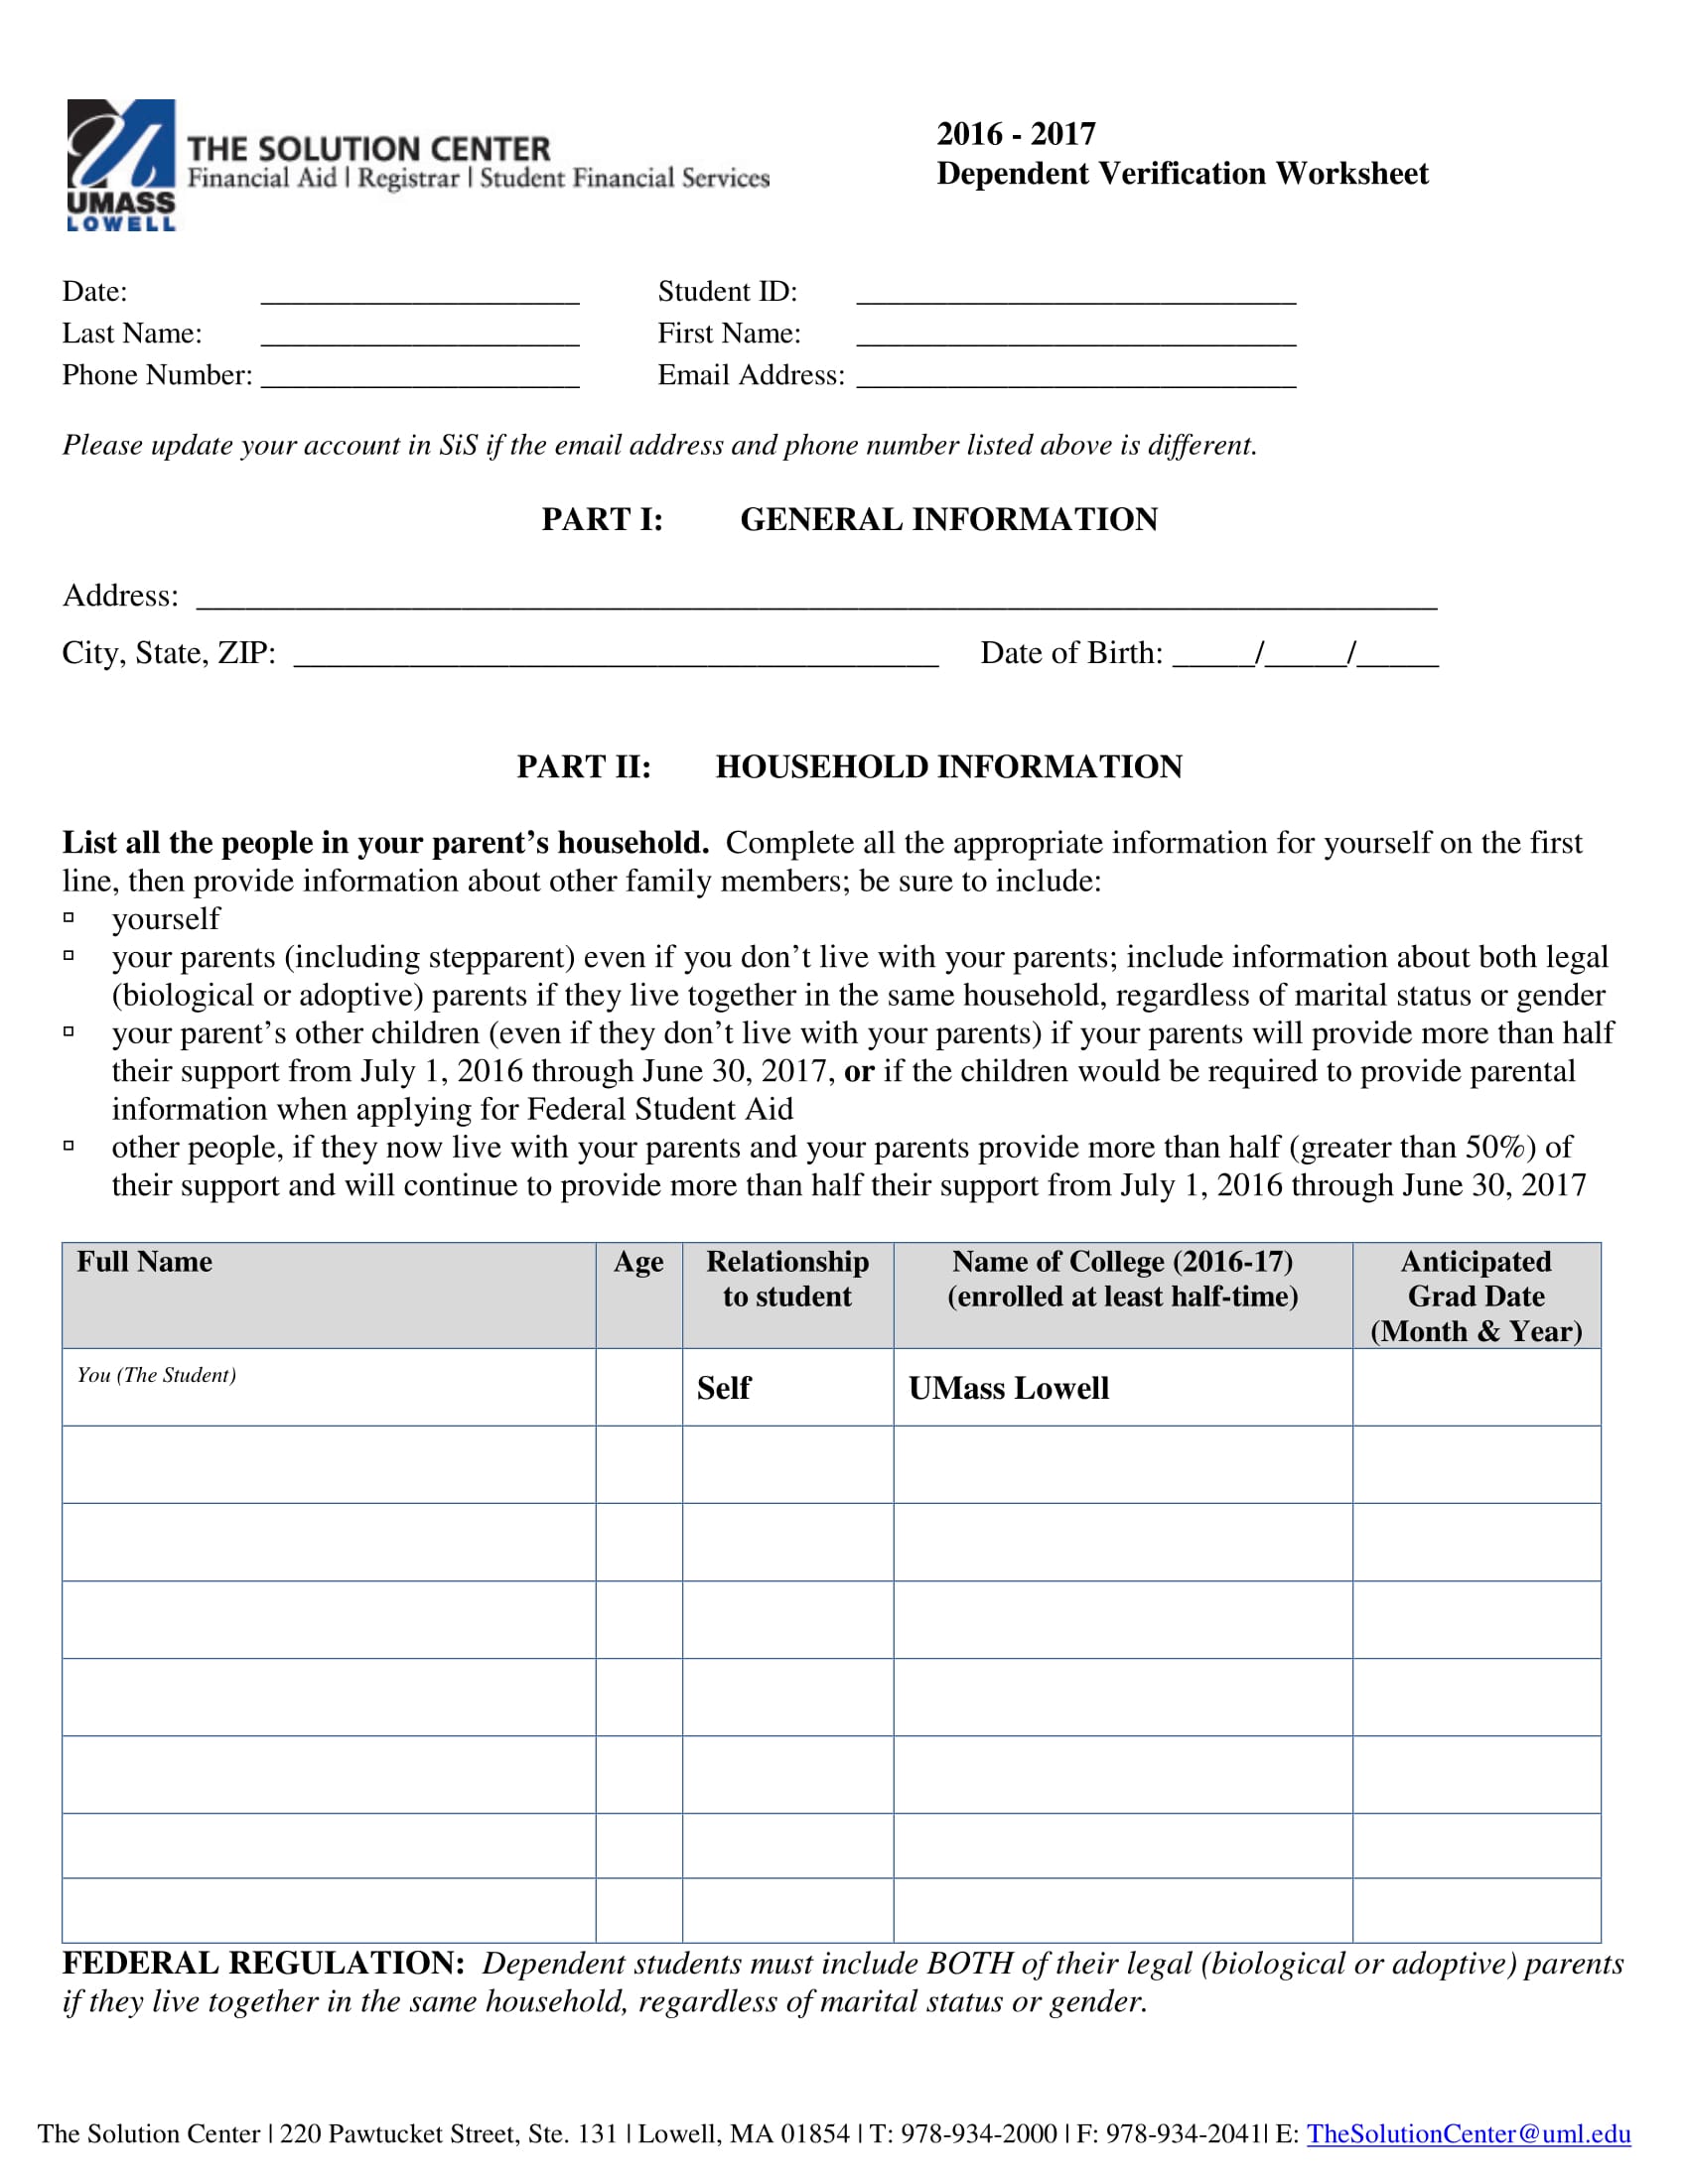 dependent verification worksheet form 1